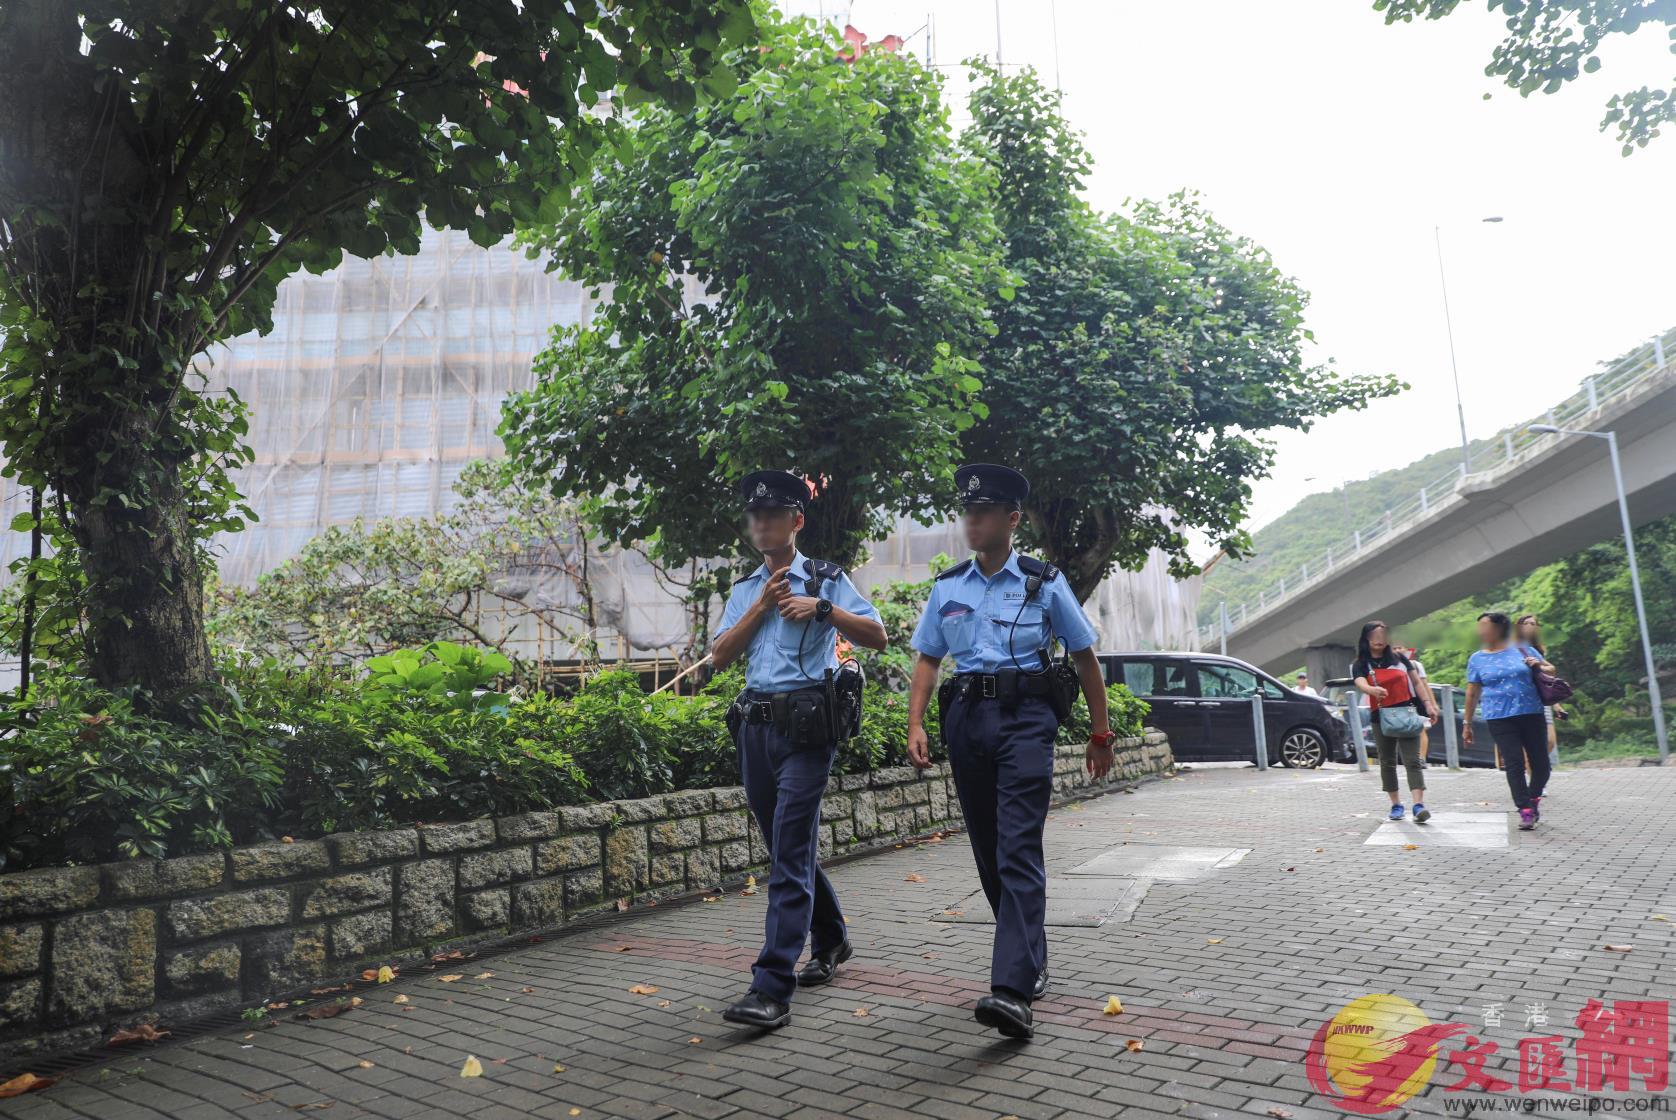 暴徒網上煽動圍攻大文集團 香港警方加強戒備巡逻